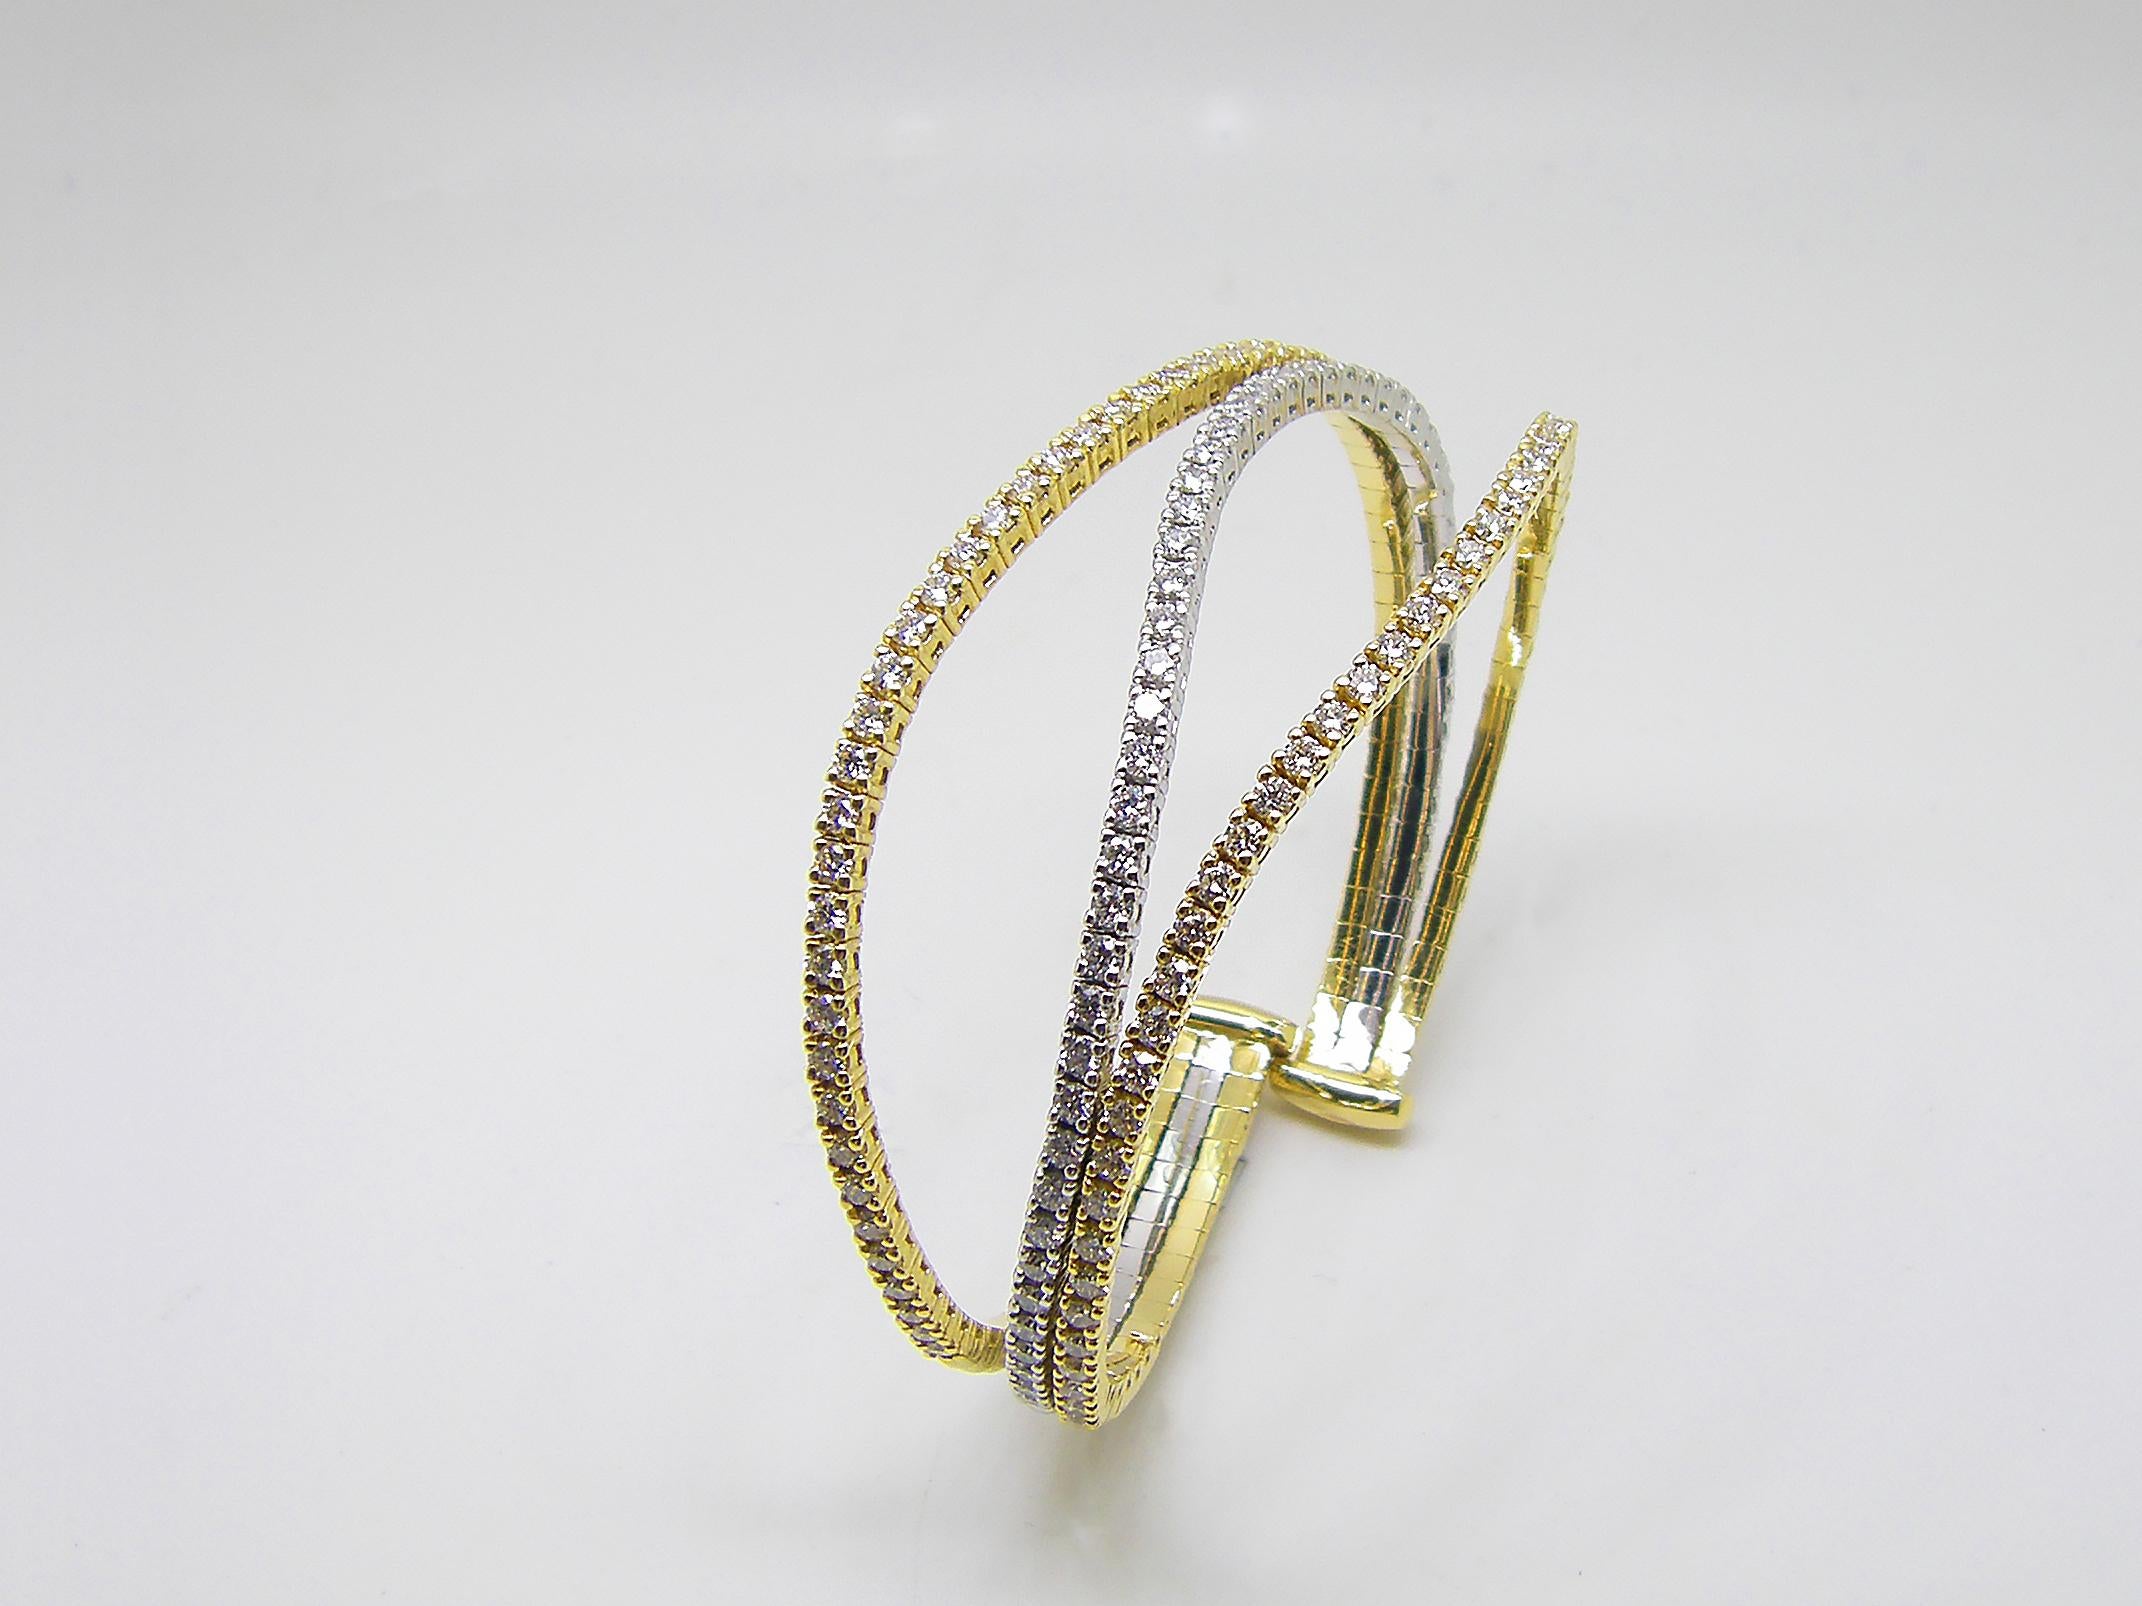 S.Georgios Designer flexible Armspange Manschette Armband ist benutzerdefinierte von Gelb und Weißgold 18 Karat gemacht. Die wunderschöne Manschette hat weiße Diamanten im Brillantschliff mit einem Gesamtgewicht von 3,52 Karat, die mikroskopisch